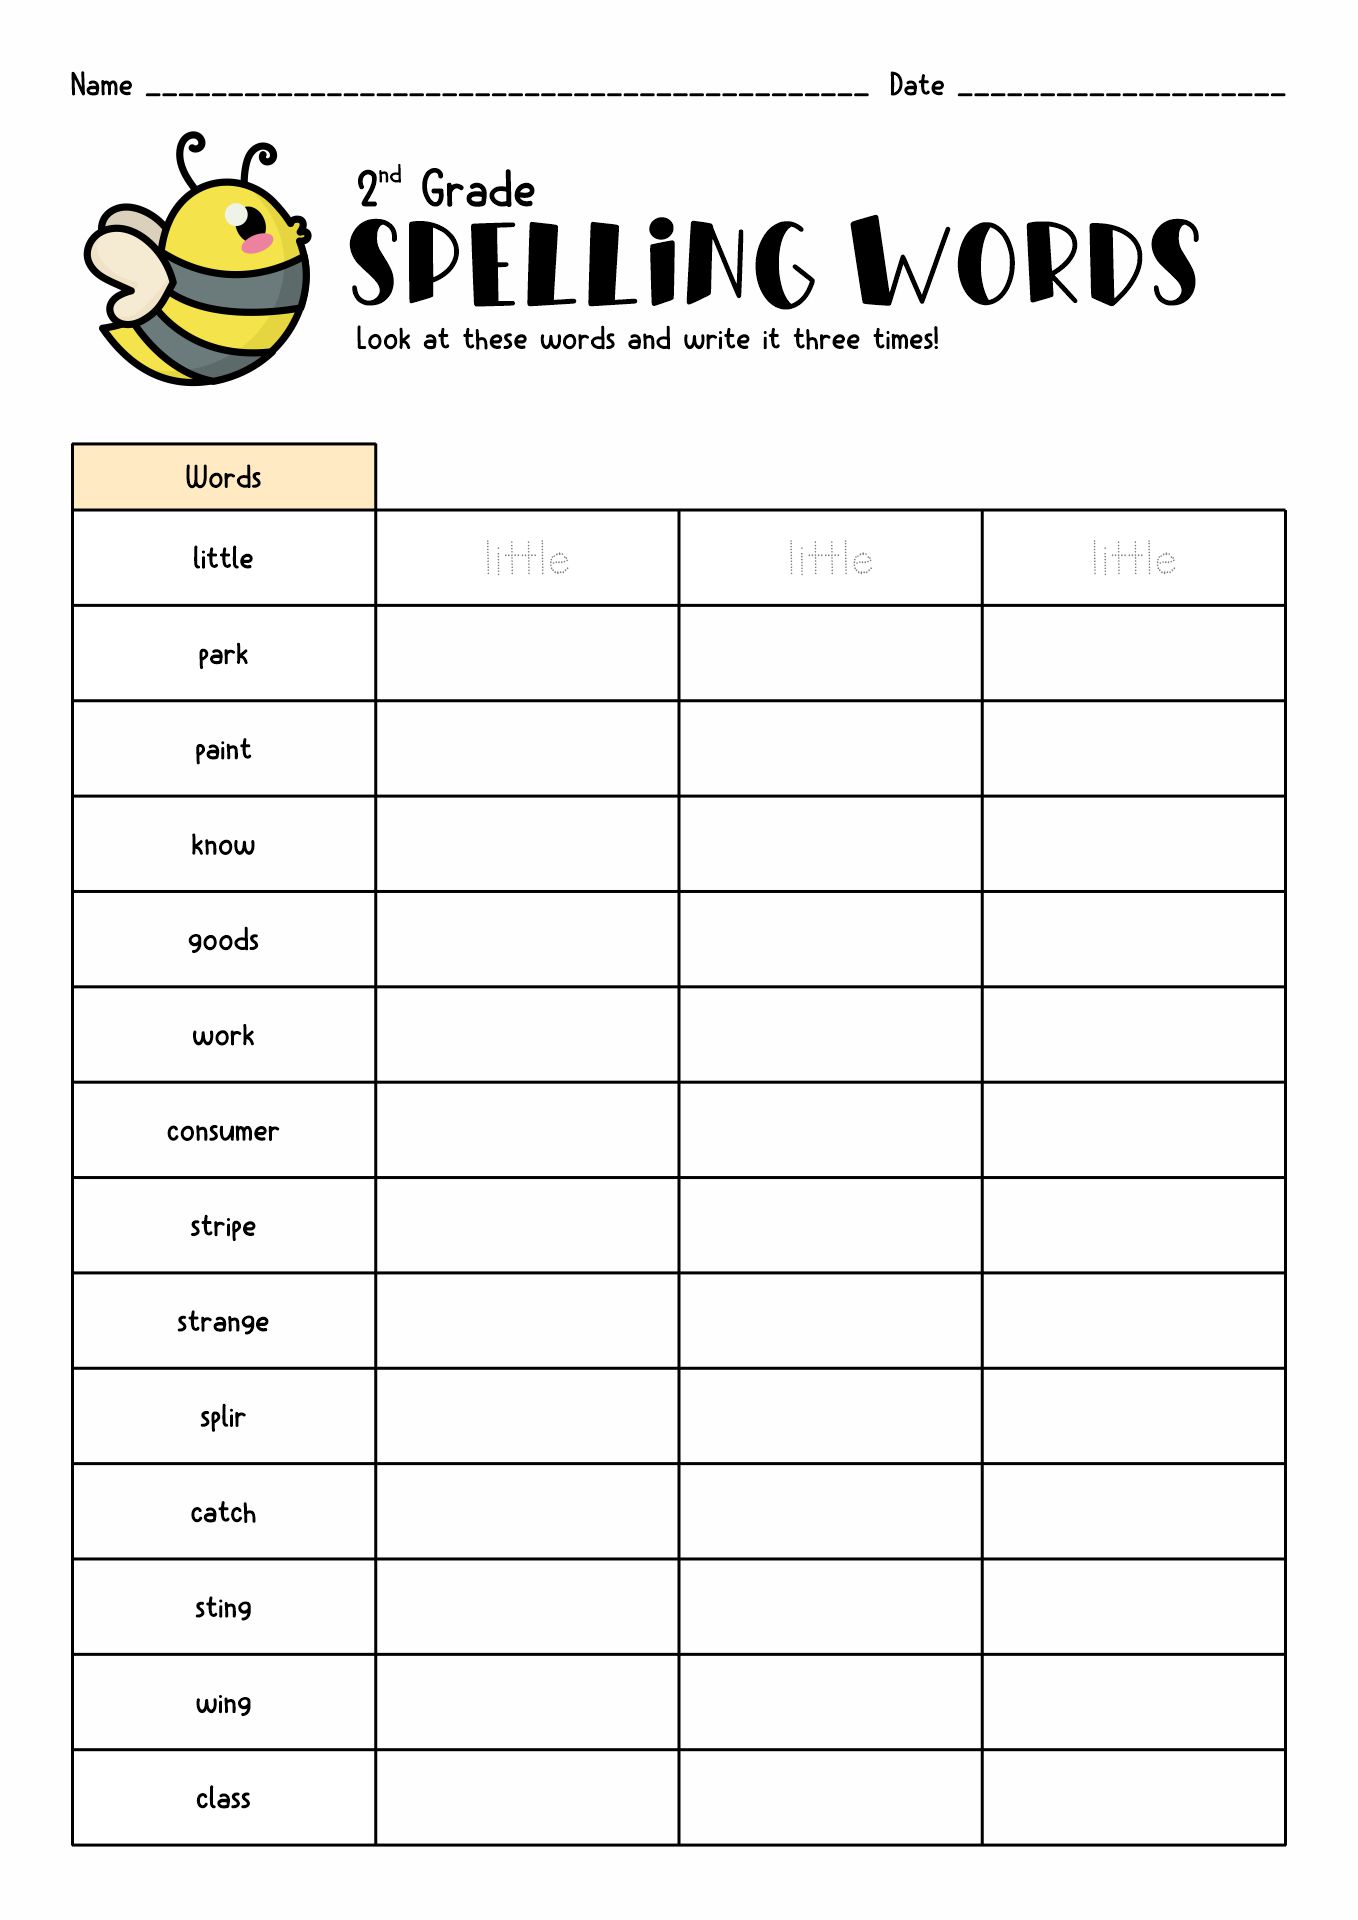 spelling-words-worksheet